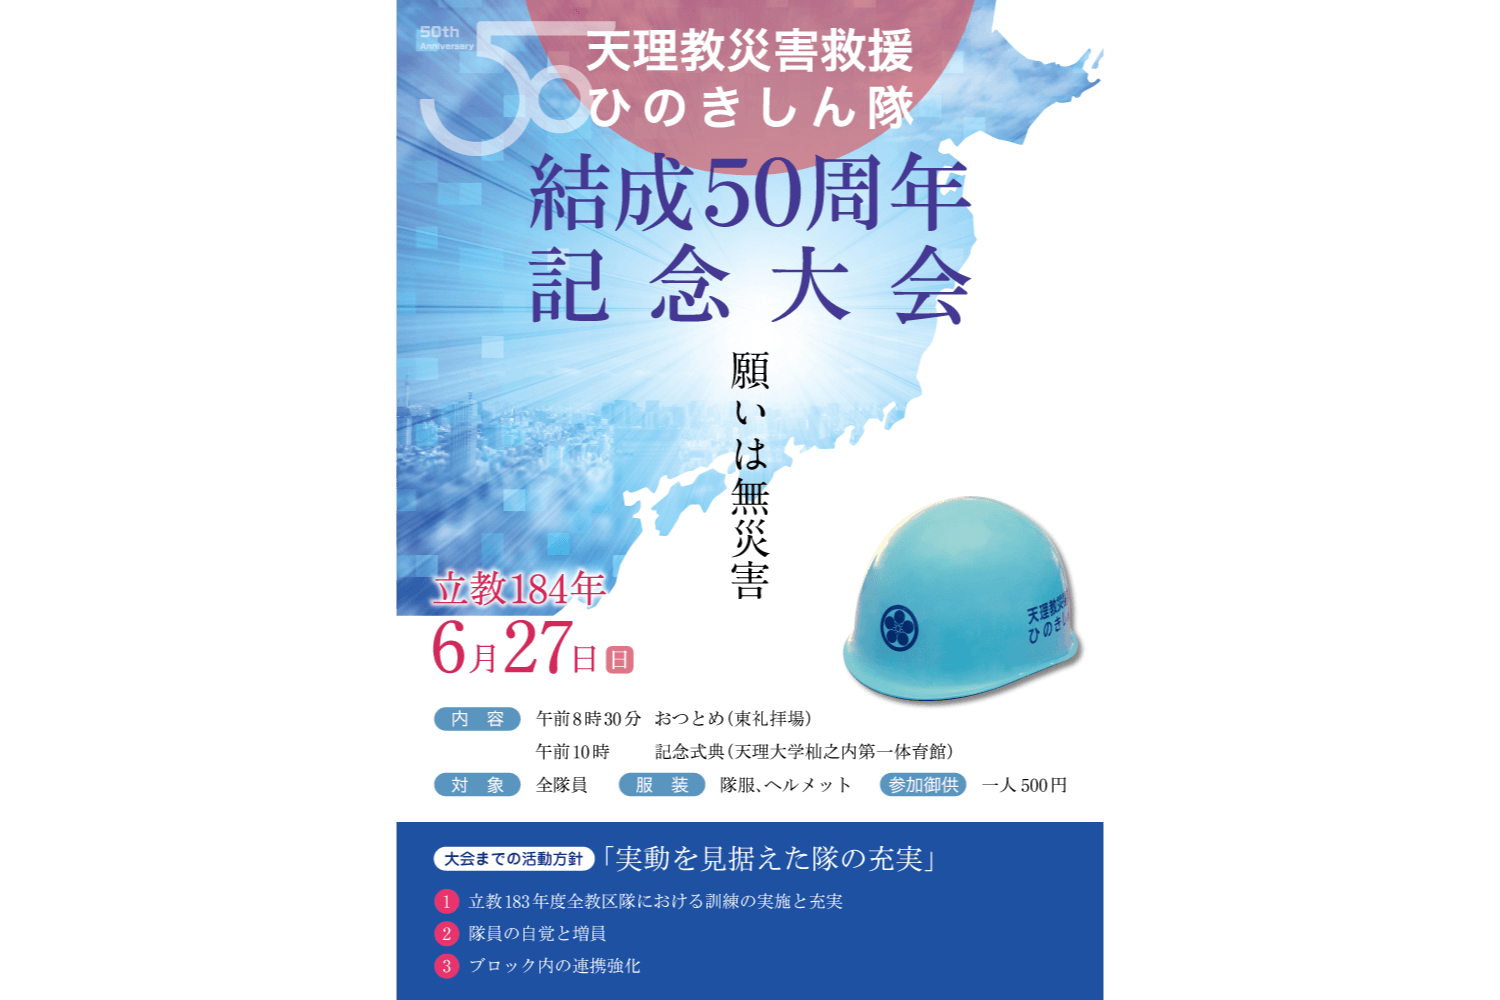 災害救援ひのきしん隊 結成50周年記念大会 ポスターデザイン